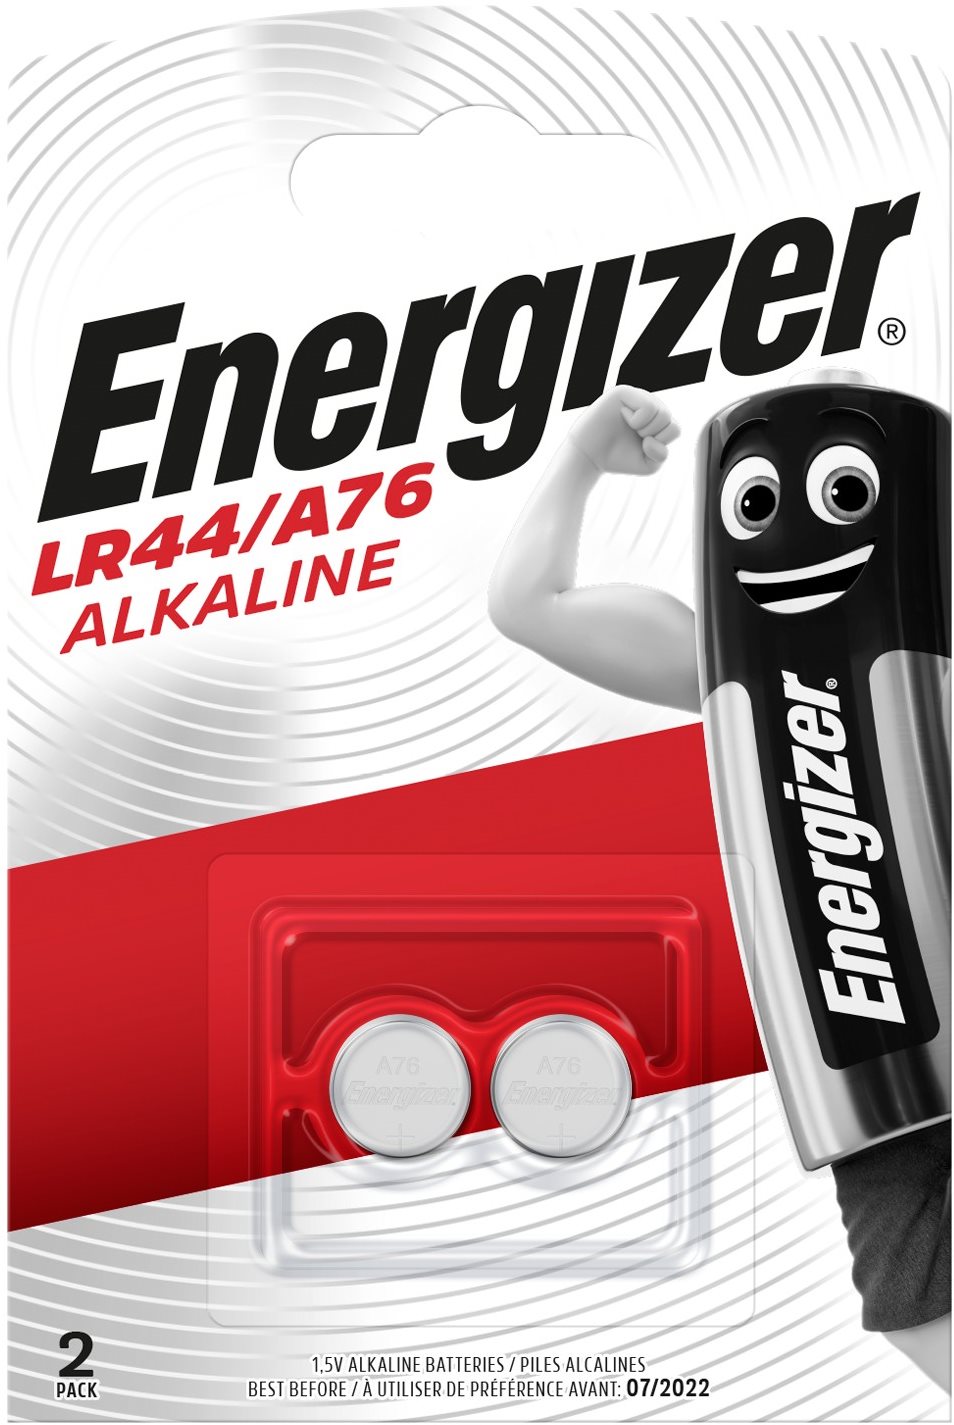 Energizer Speciális alkáli elem LR44/A76 2 db